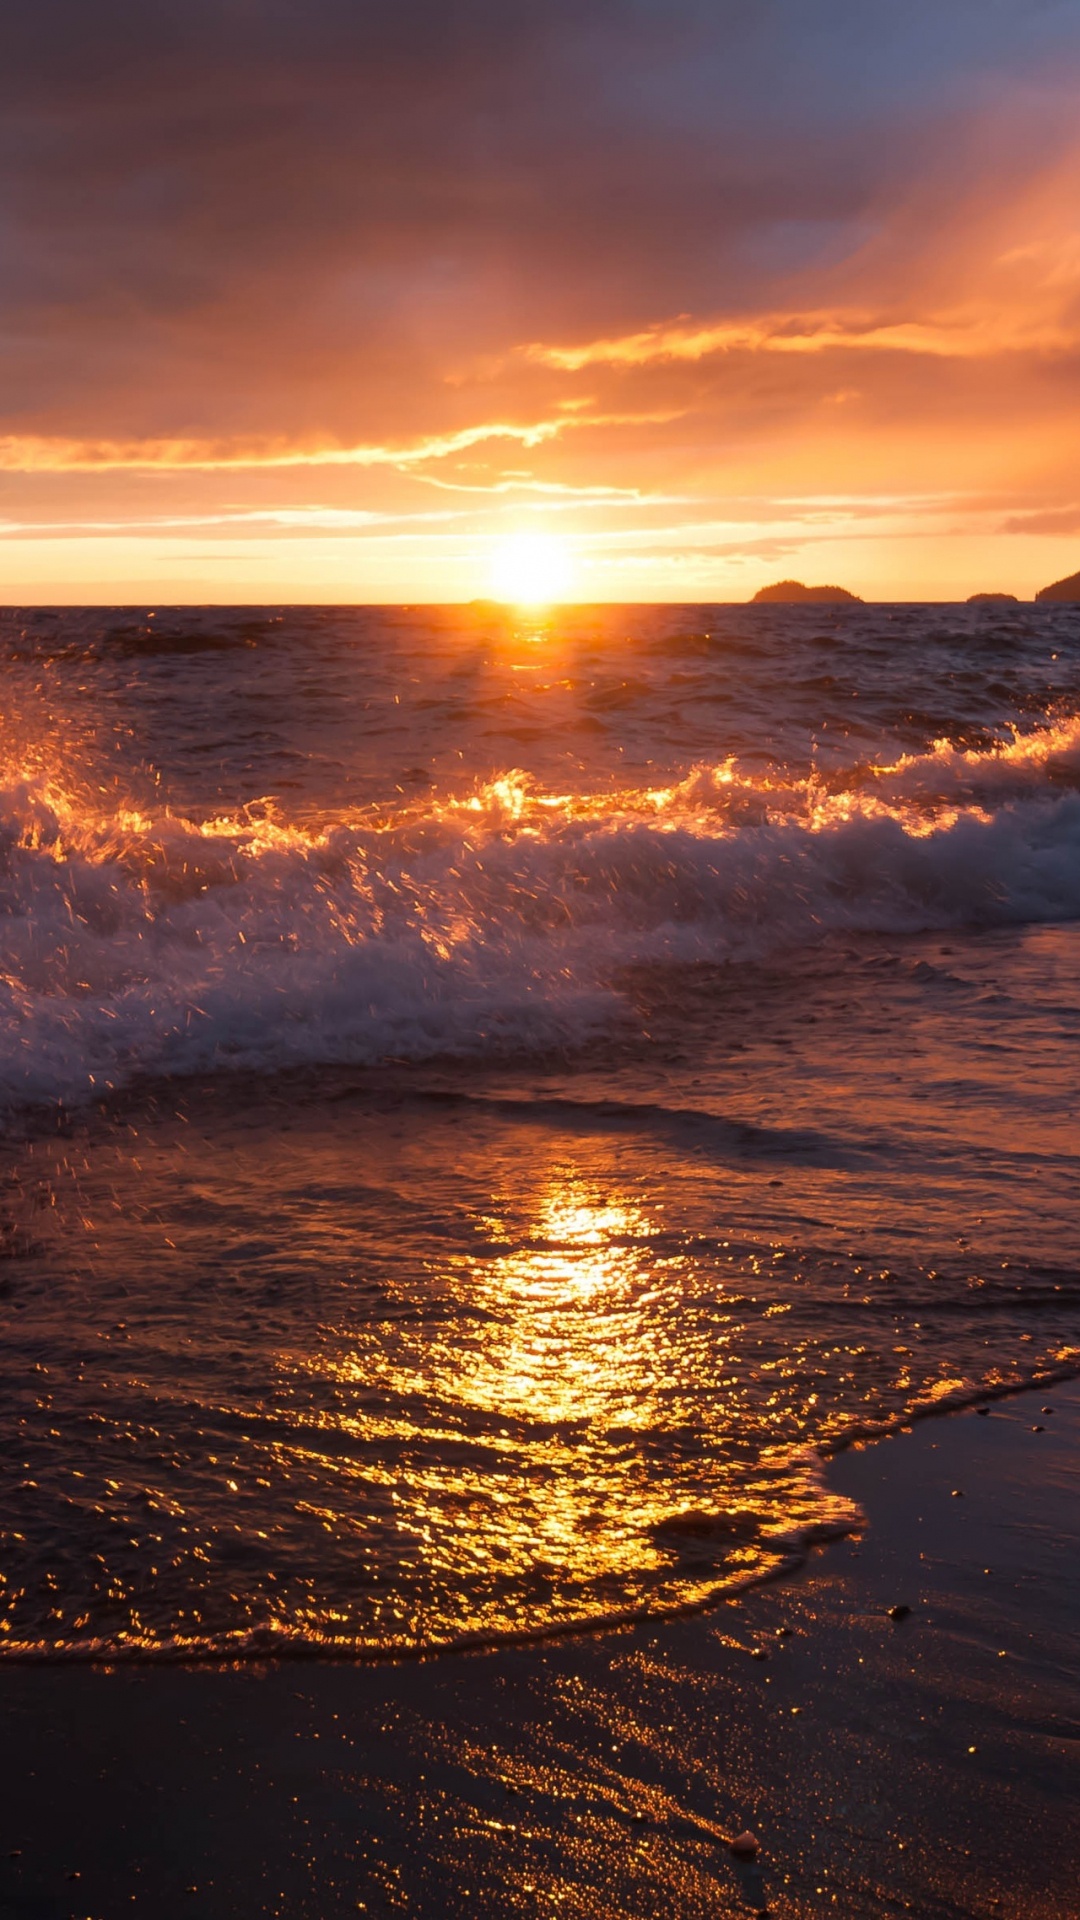 日落, 破浪, 地平线, 大海, 余辉 壁纸 1080x1920 允许